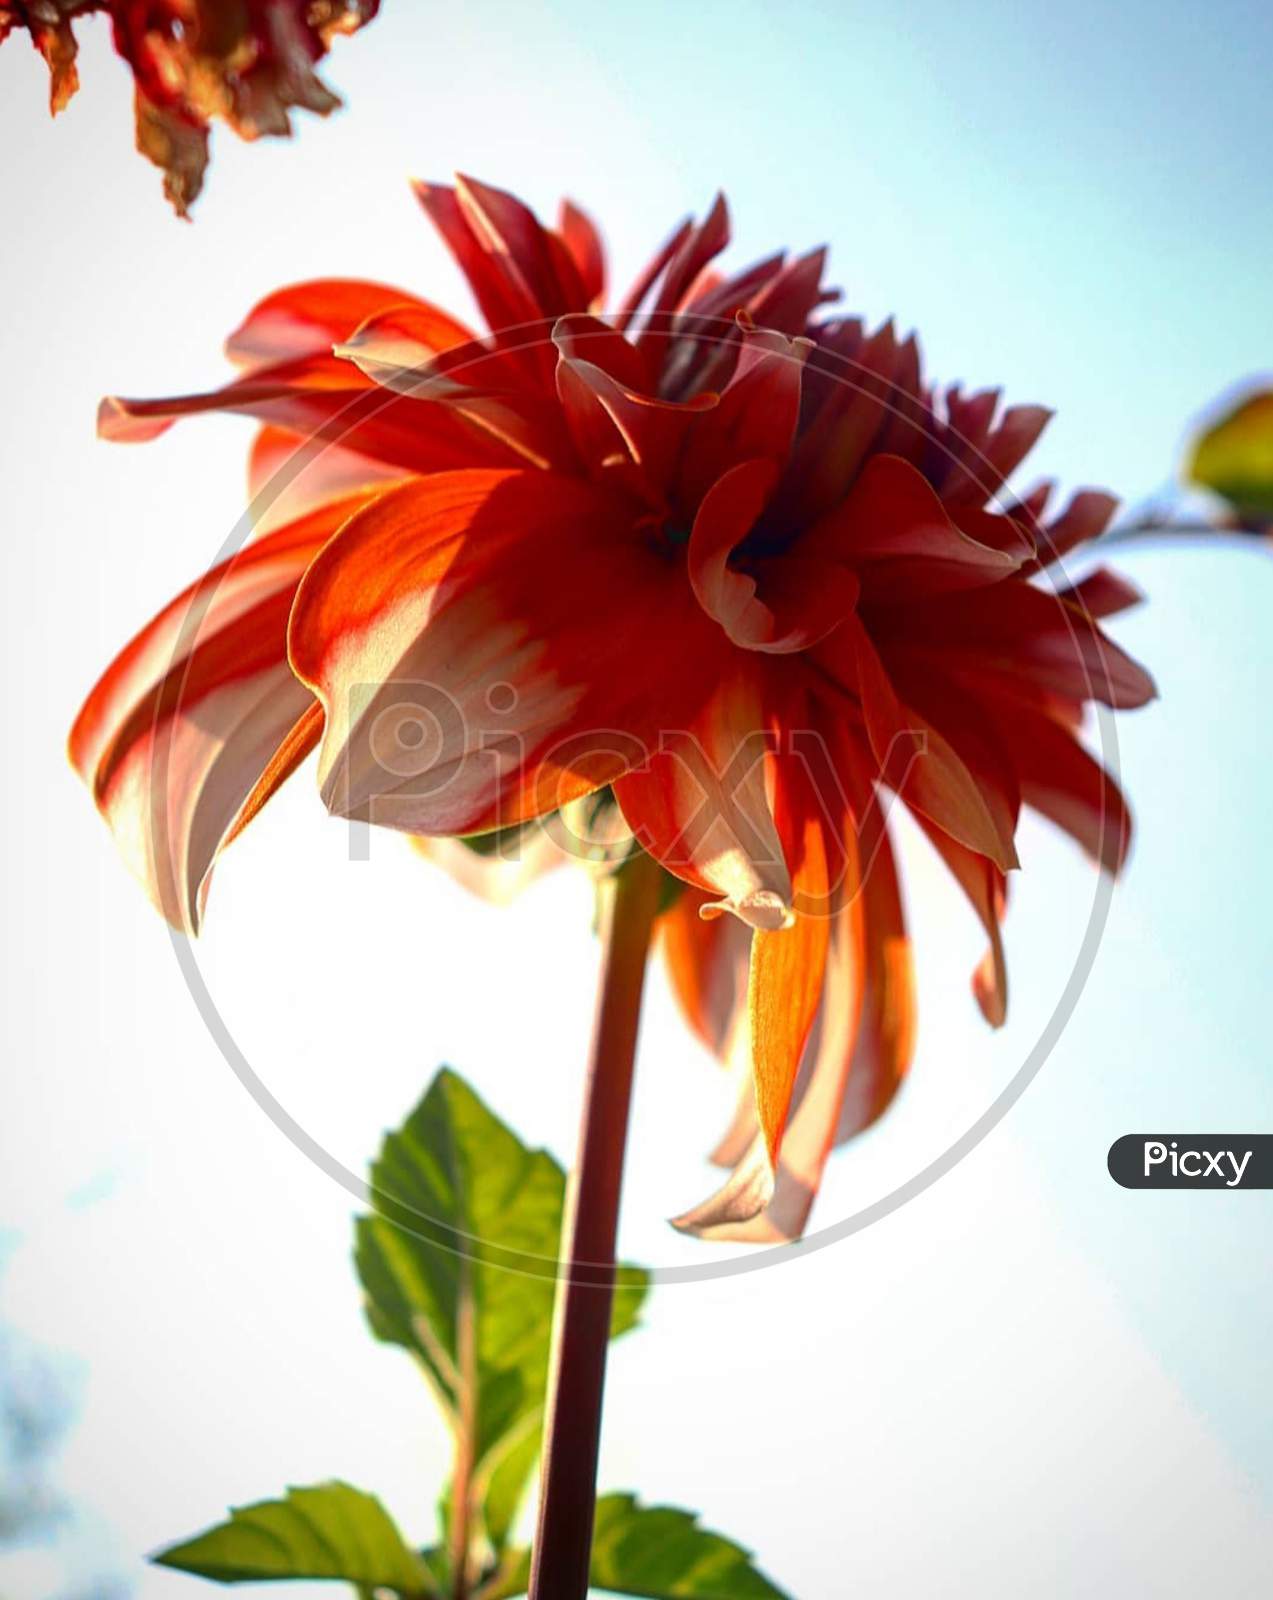 Red×Remove  Close-up×Remove  Botany×Remove  Orange×Remove  Flowering plant×Remove  Plant×Remove  Flower×Remove  Petal×Remove  Gerbera×Remove  barberton daisy×Remove